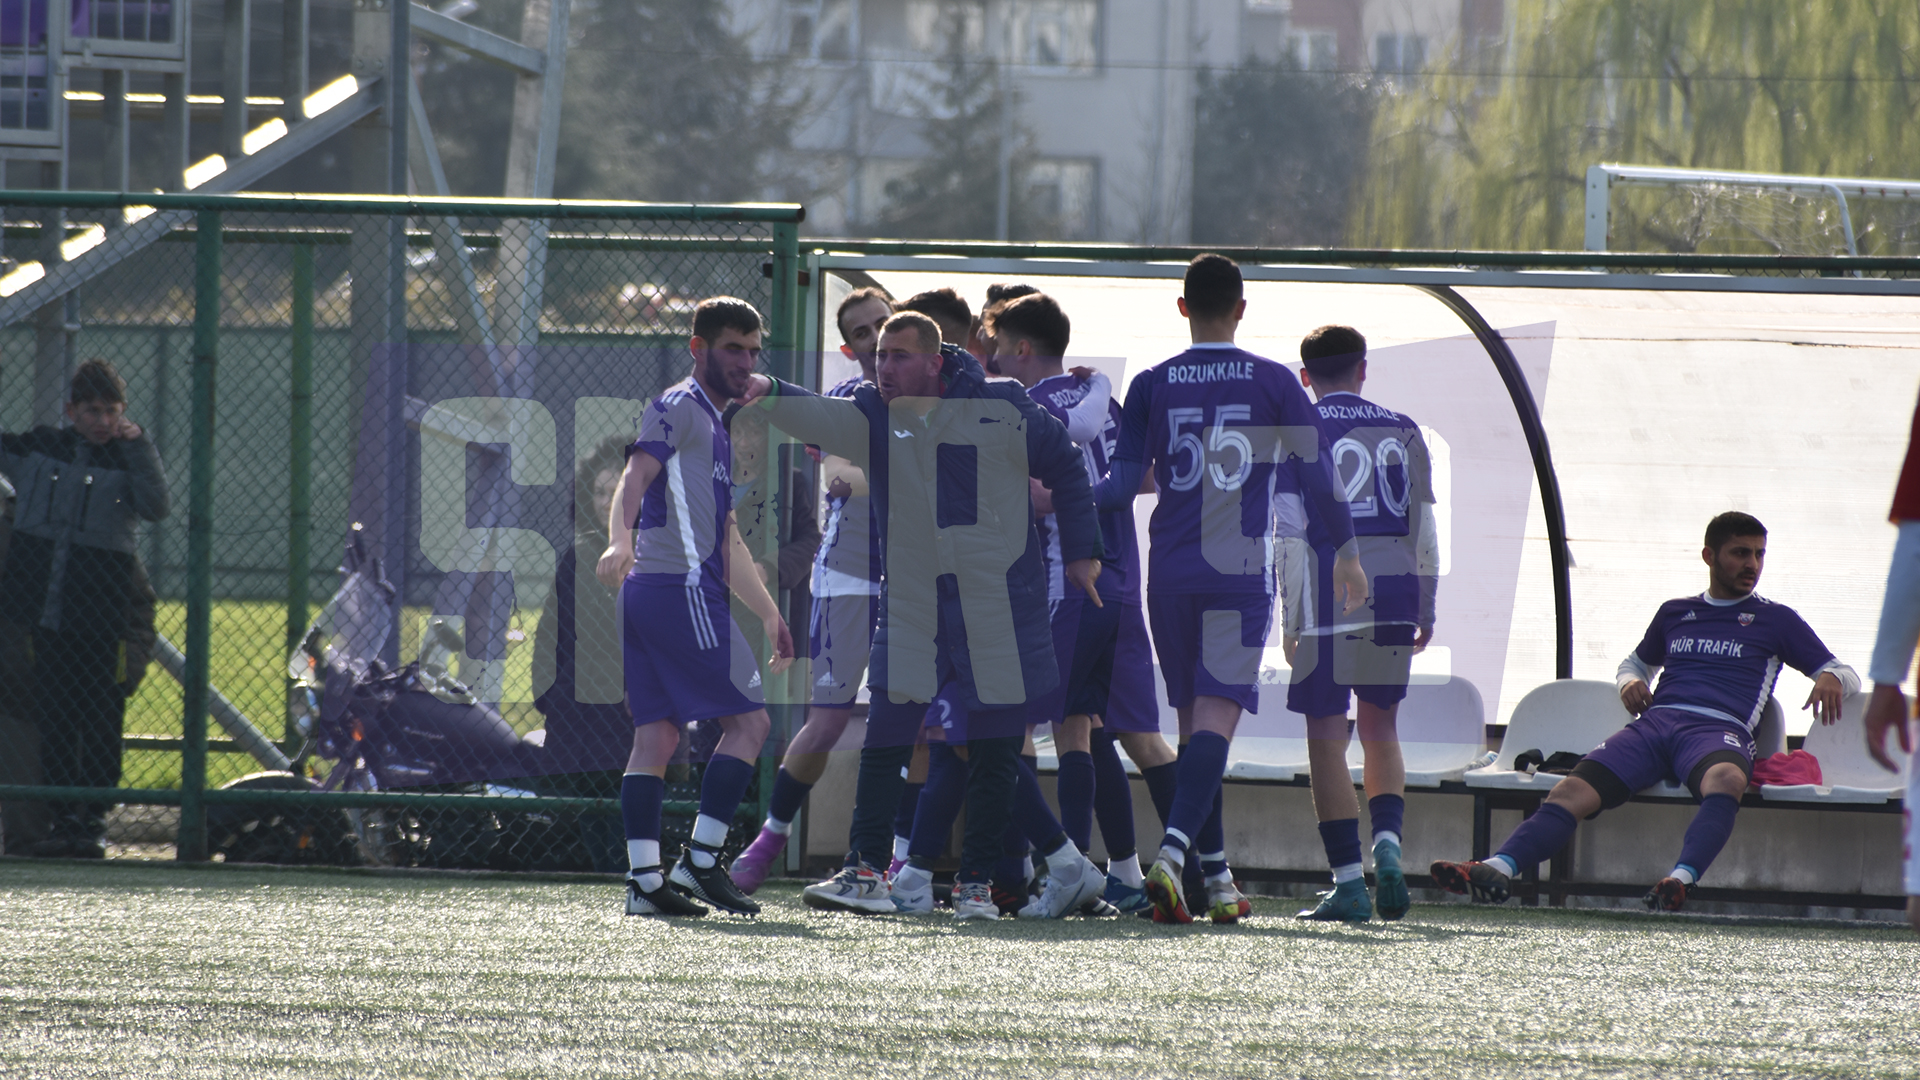  Fidangörspor ile Bozukkale Akyazı Futbol Kulübü Maçı Sonrasında 18 Maç Men Cezası Daha Çıktı